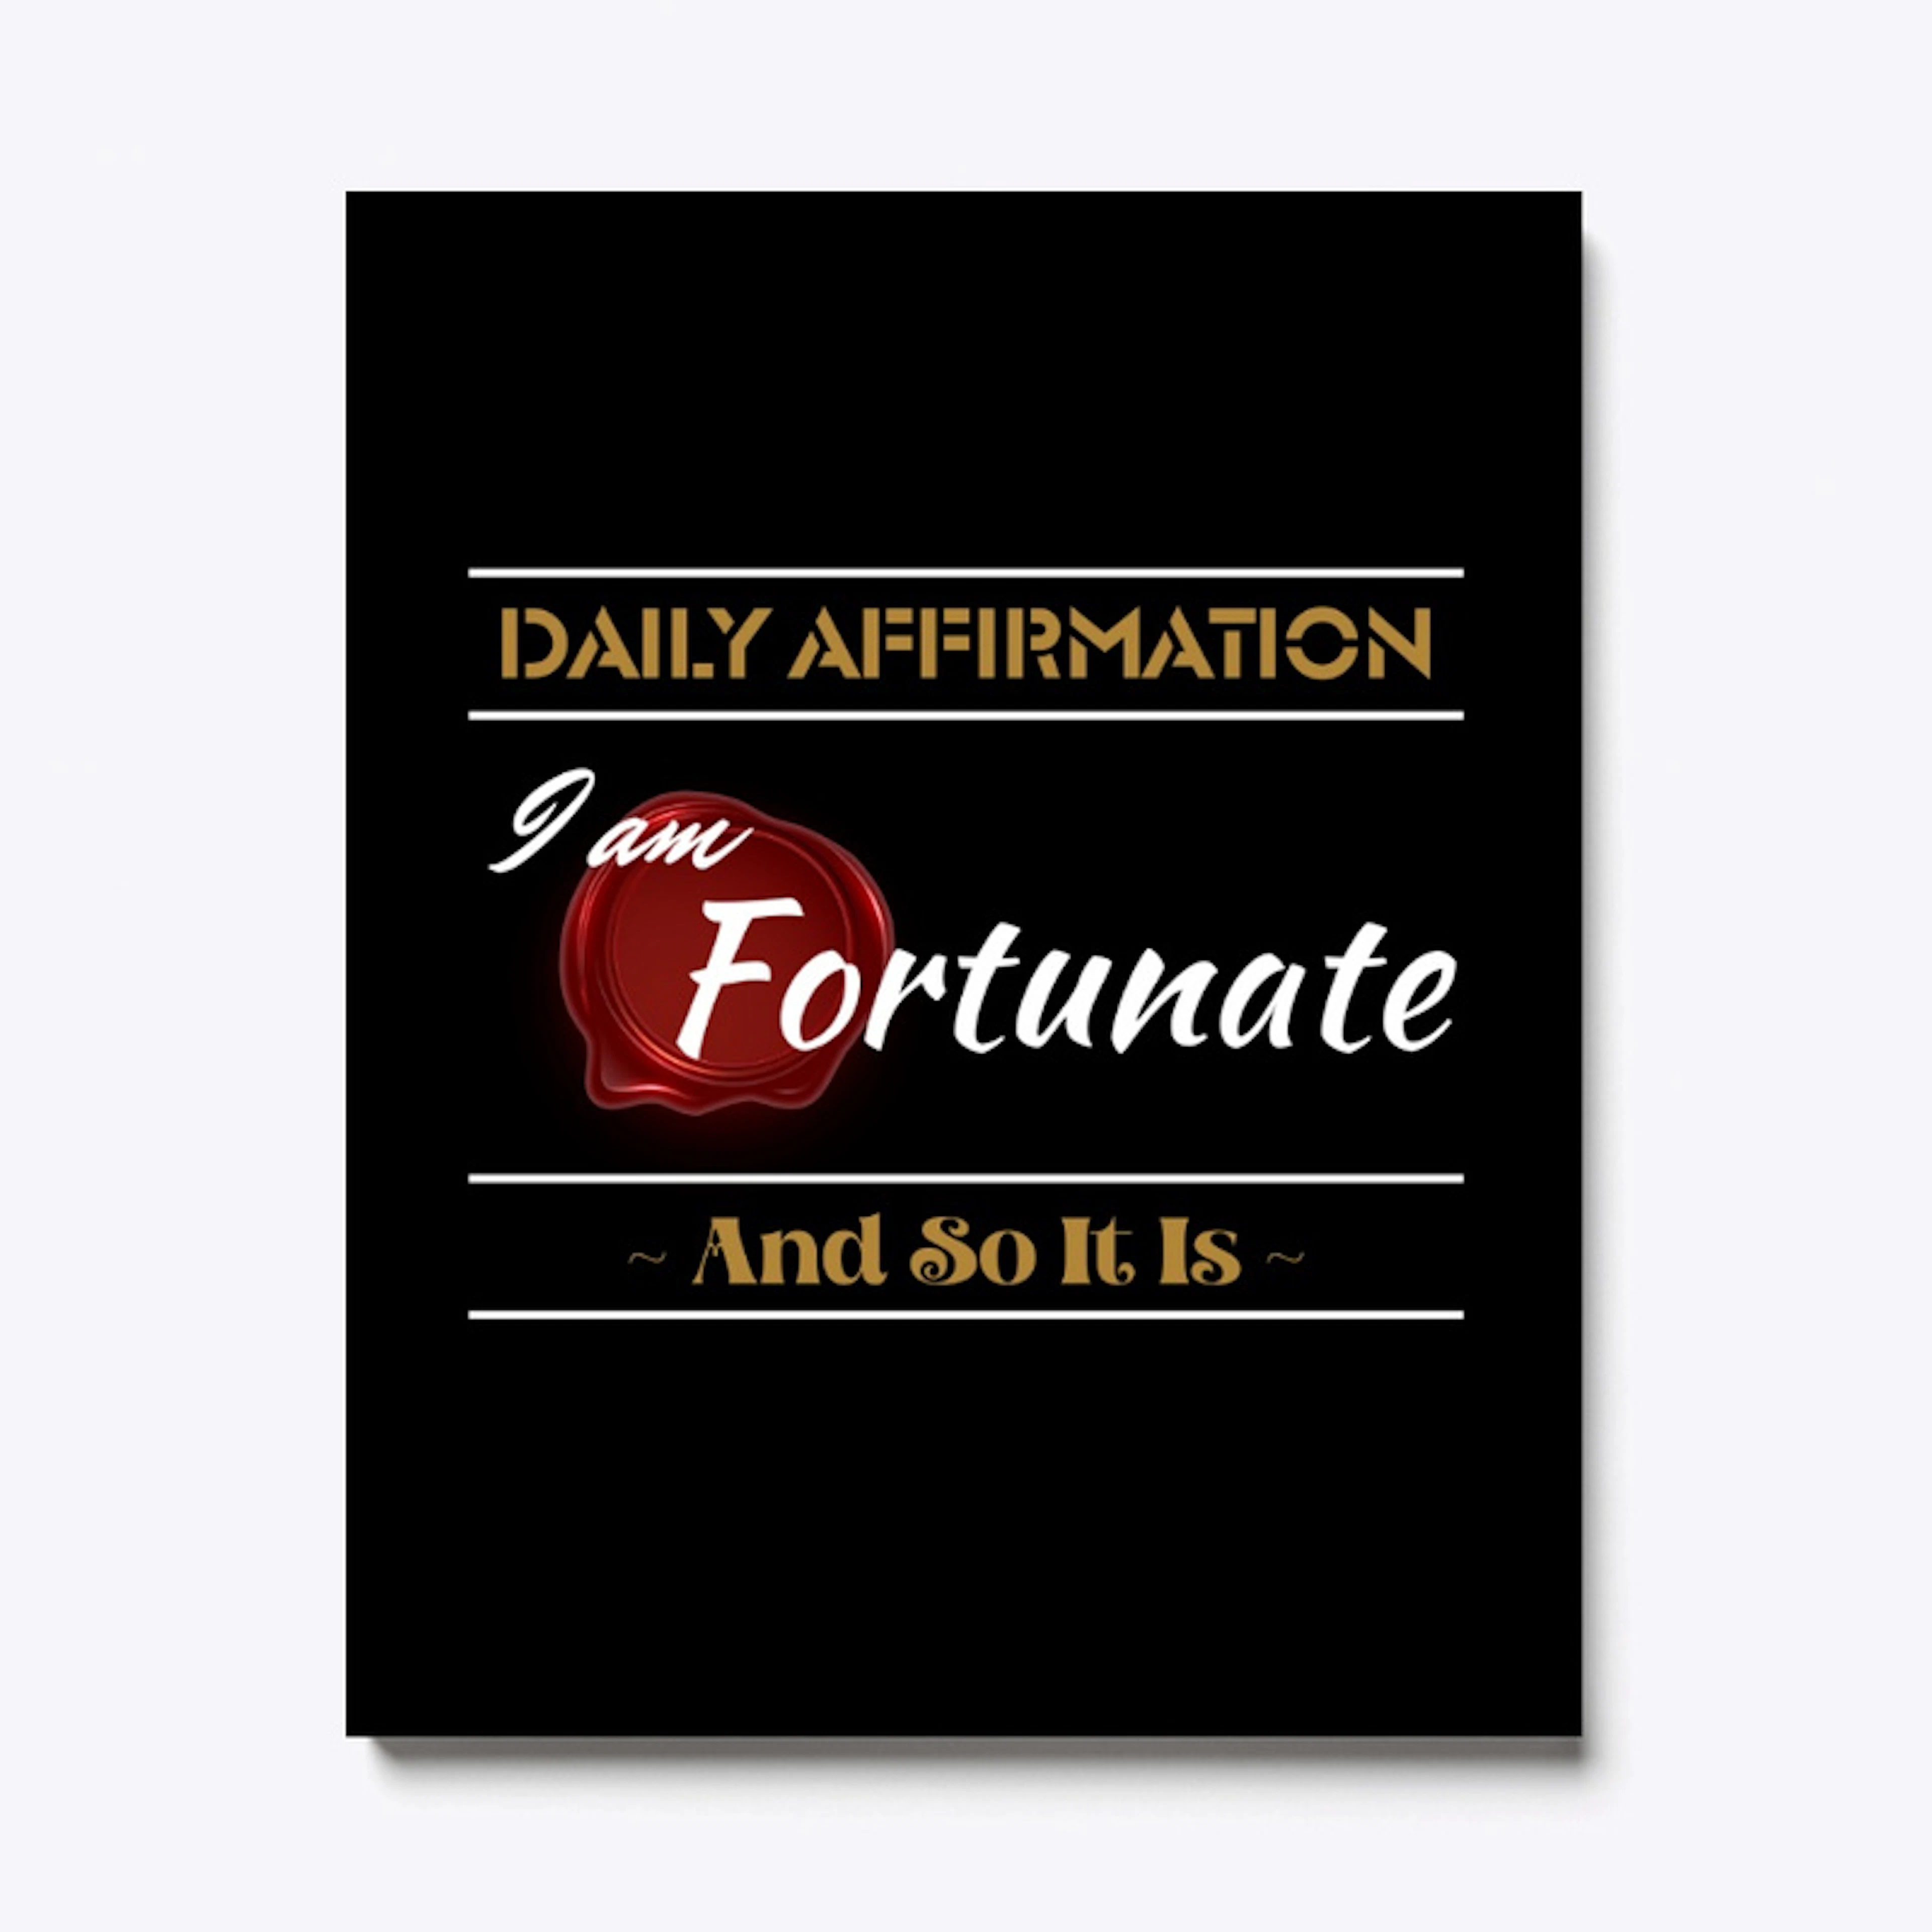 'I AM' Affirmations Range (FortunateD)